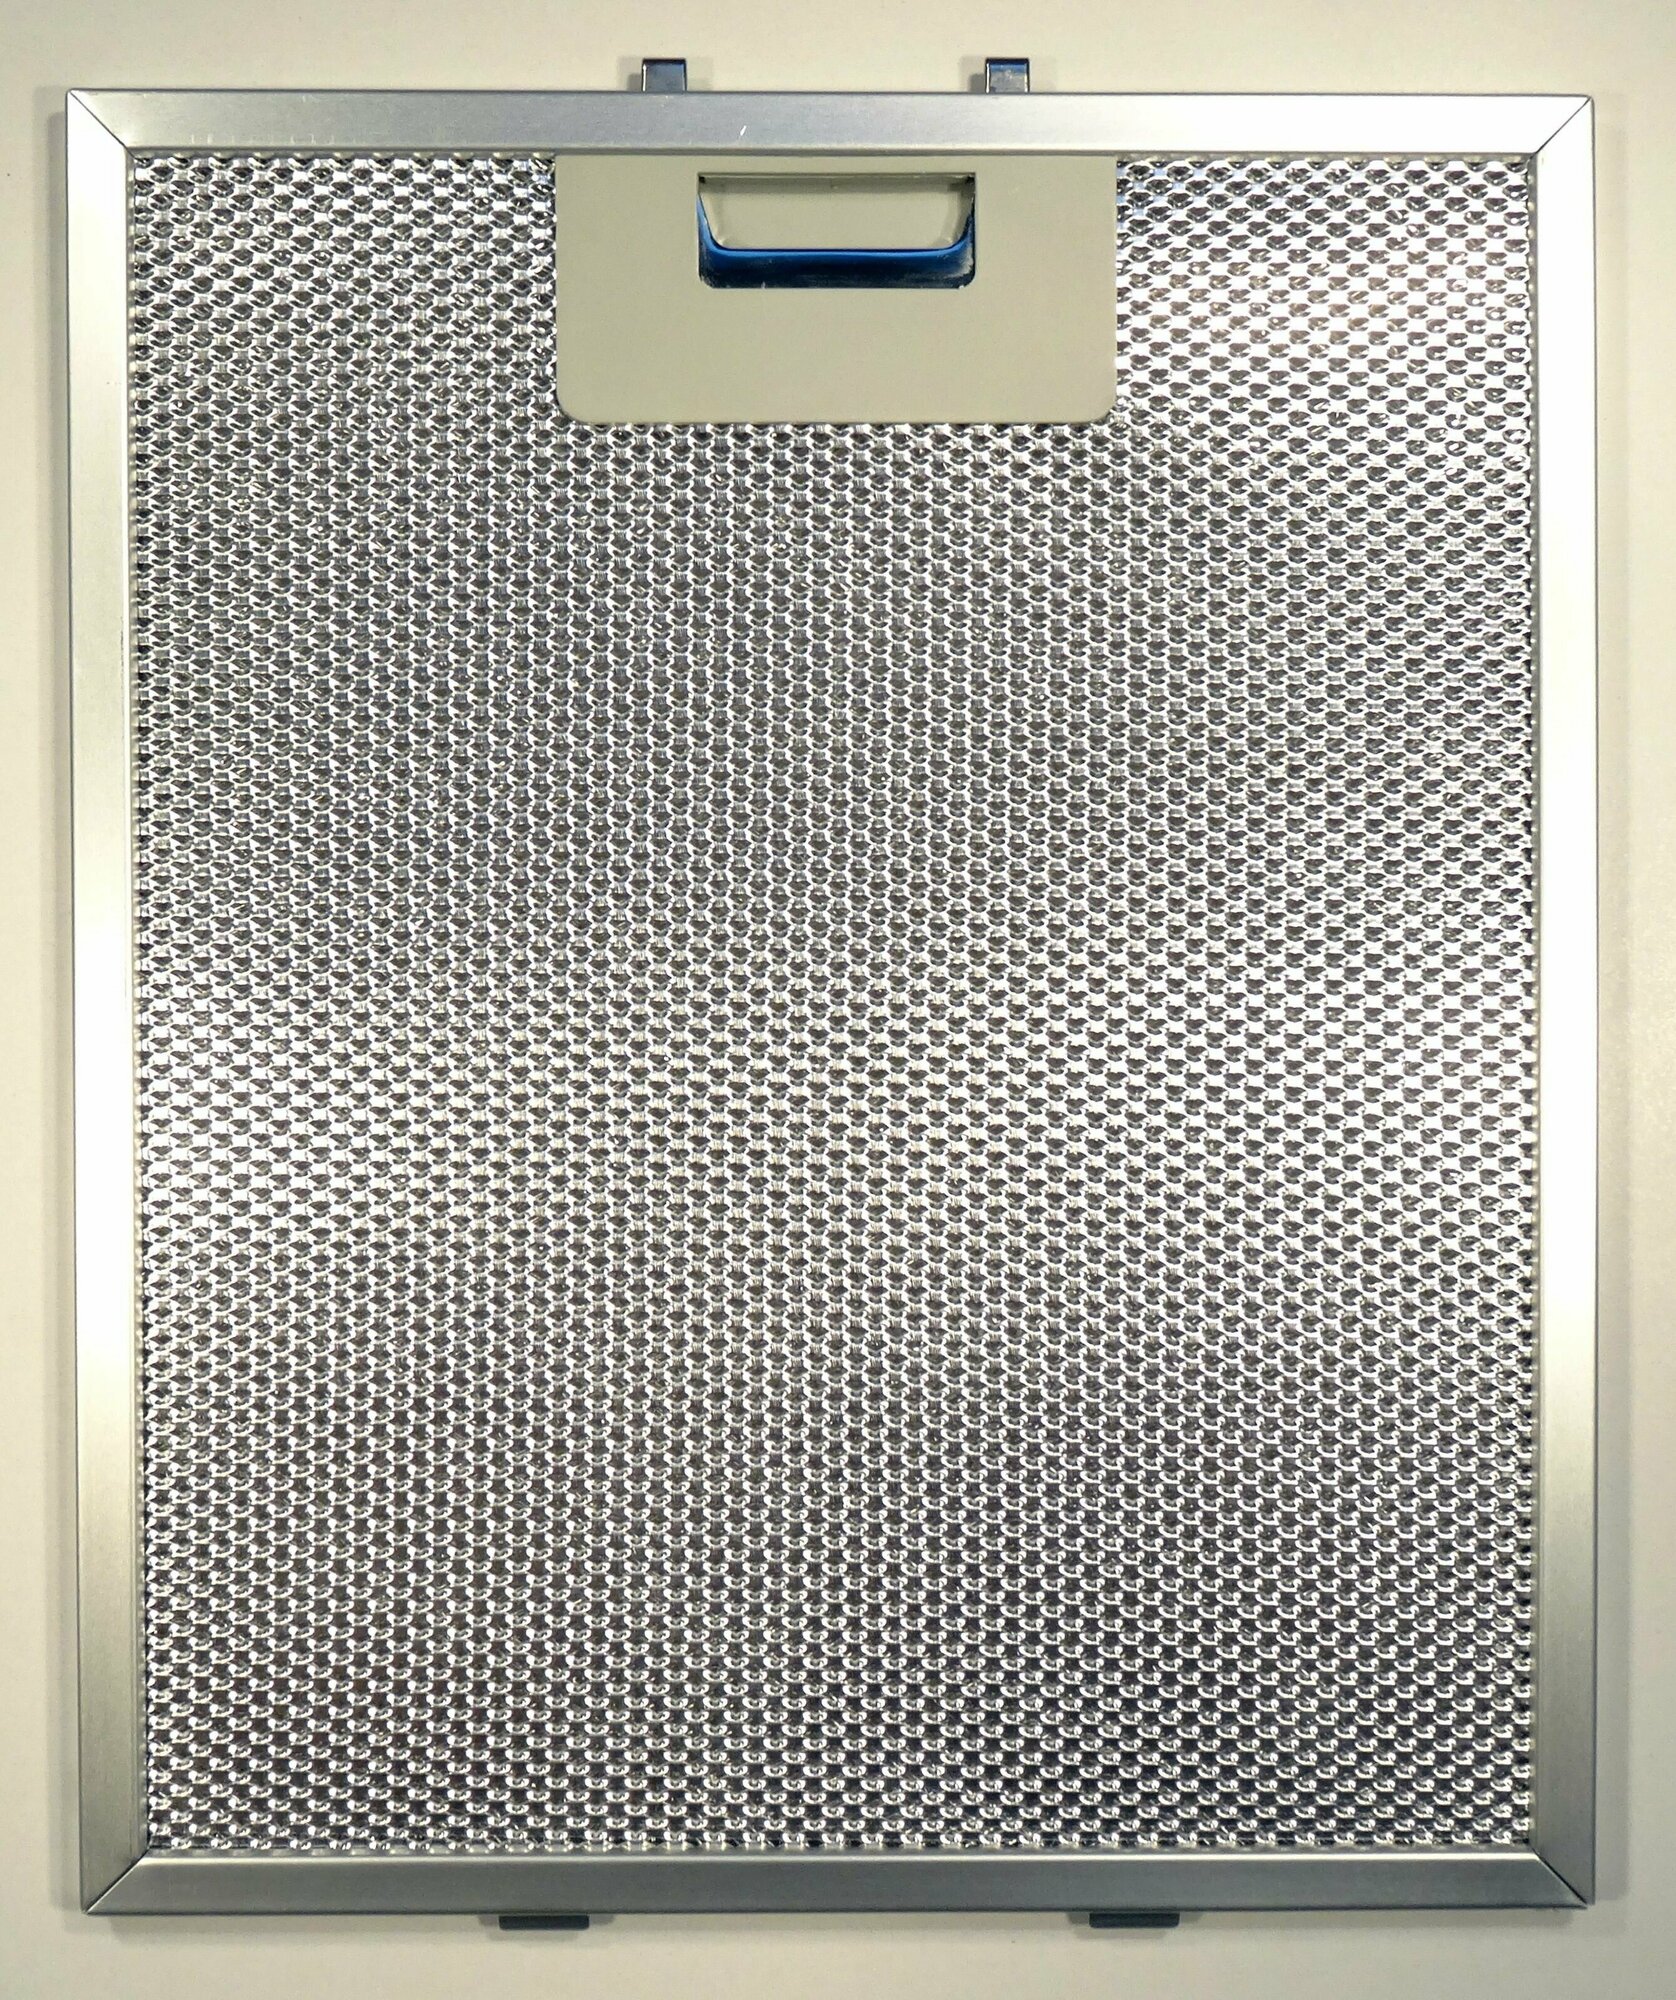 Фильтр жировой алюминиевый для вытяжки Elica, JetAir ASPEN 60 WH и т.д. - GF01QA, 275*230 мм. Товар уцененный - фотография № 1